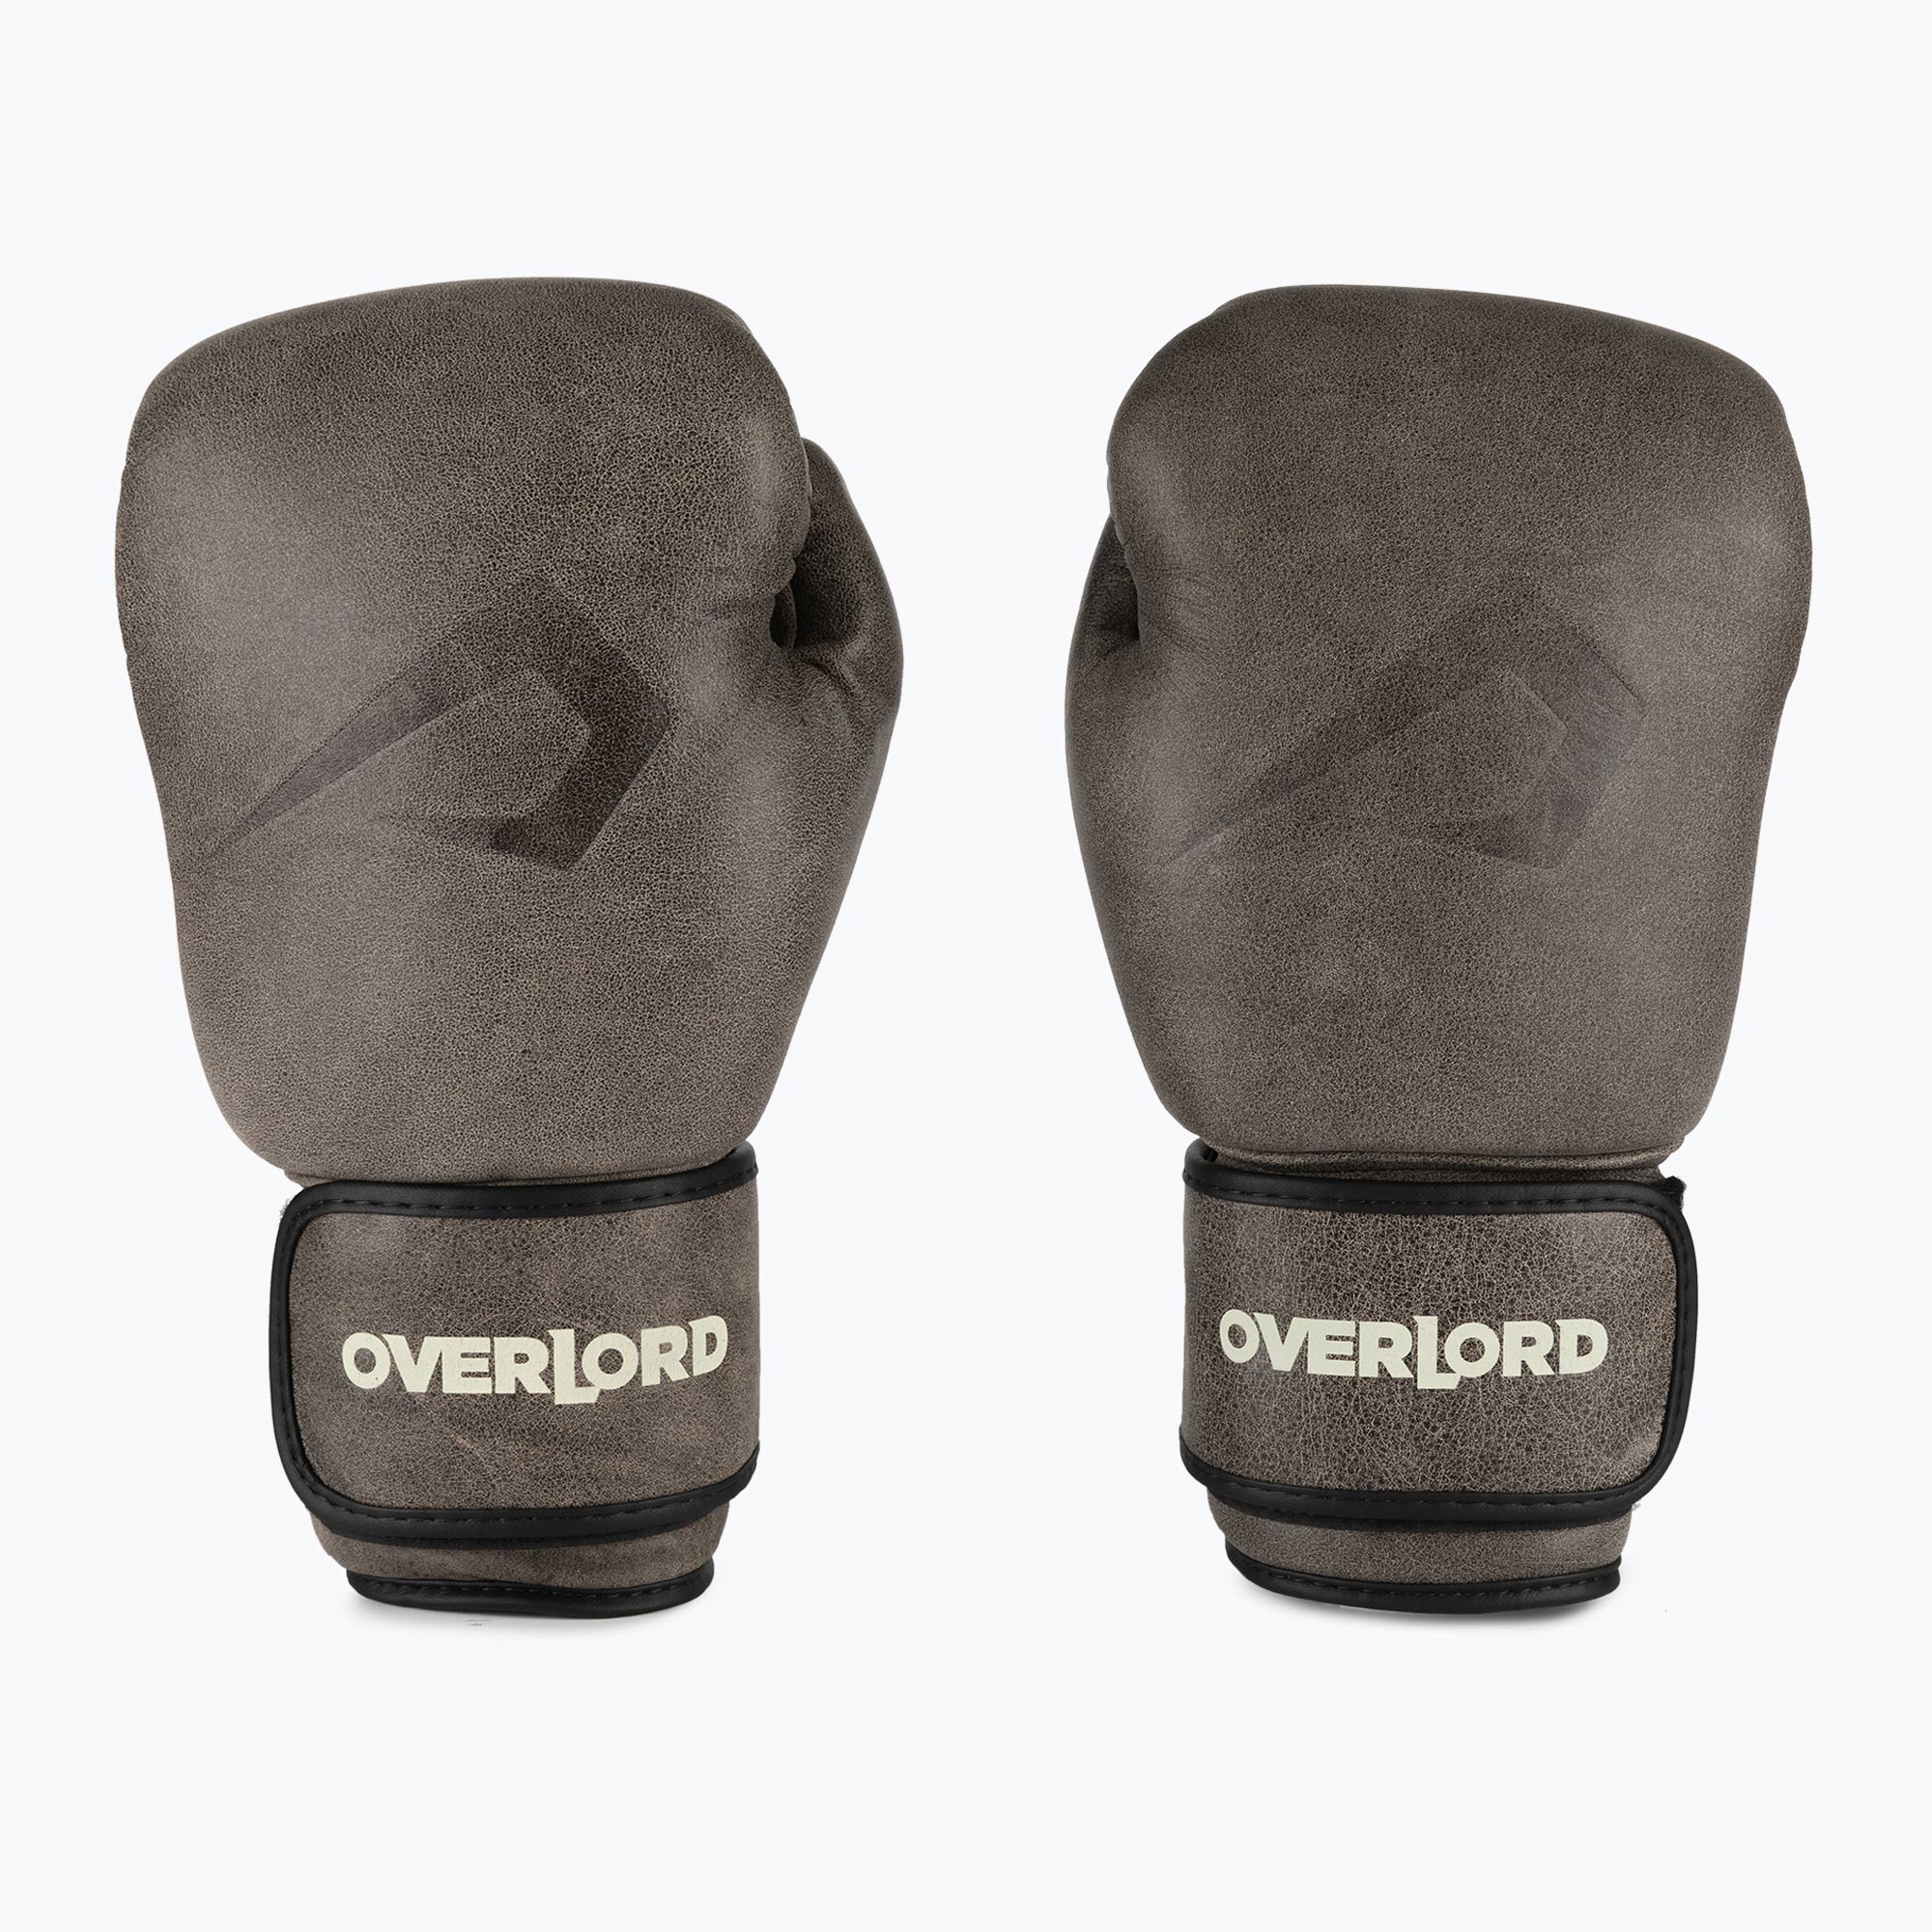 Hnedé boxerské rukavice Overlord Old School 100006-BR